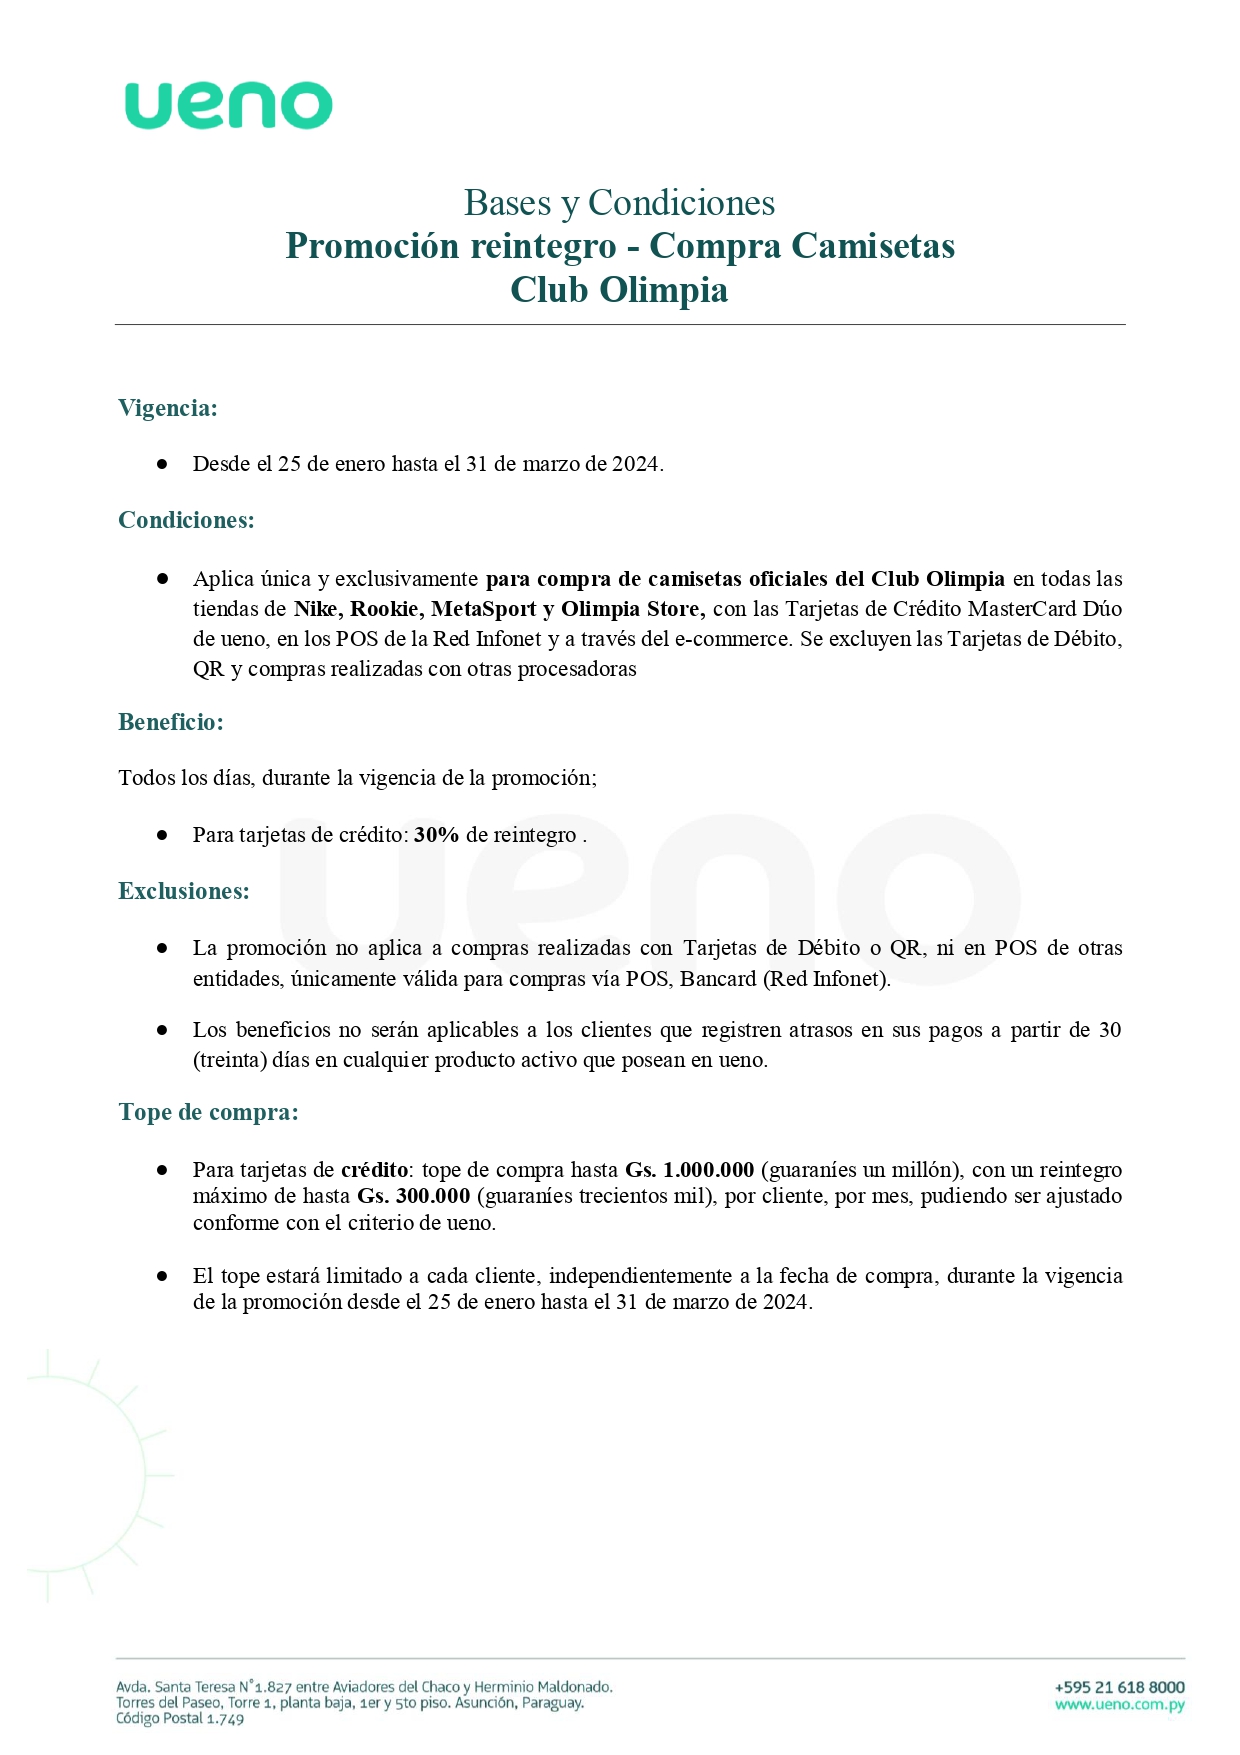 ByC - Venta de Camisetas Olimpia (rev)_page-0001.jpg